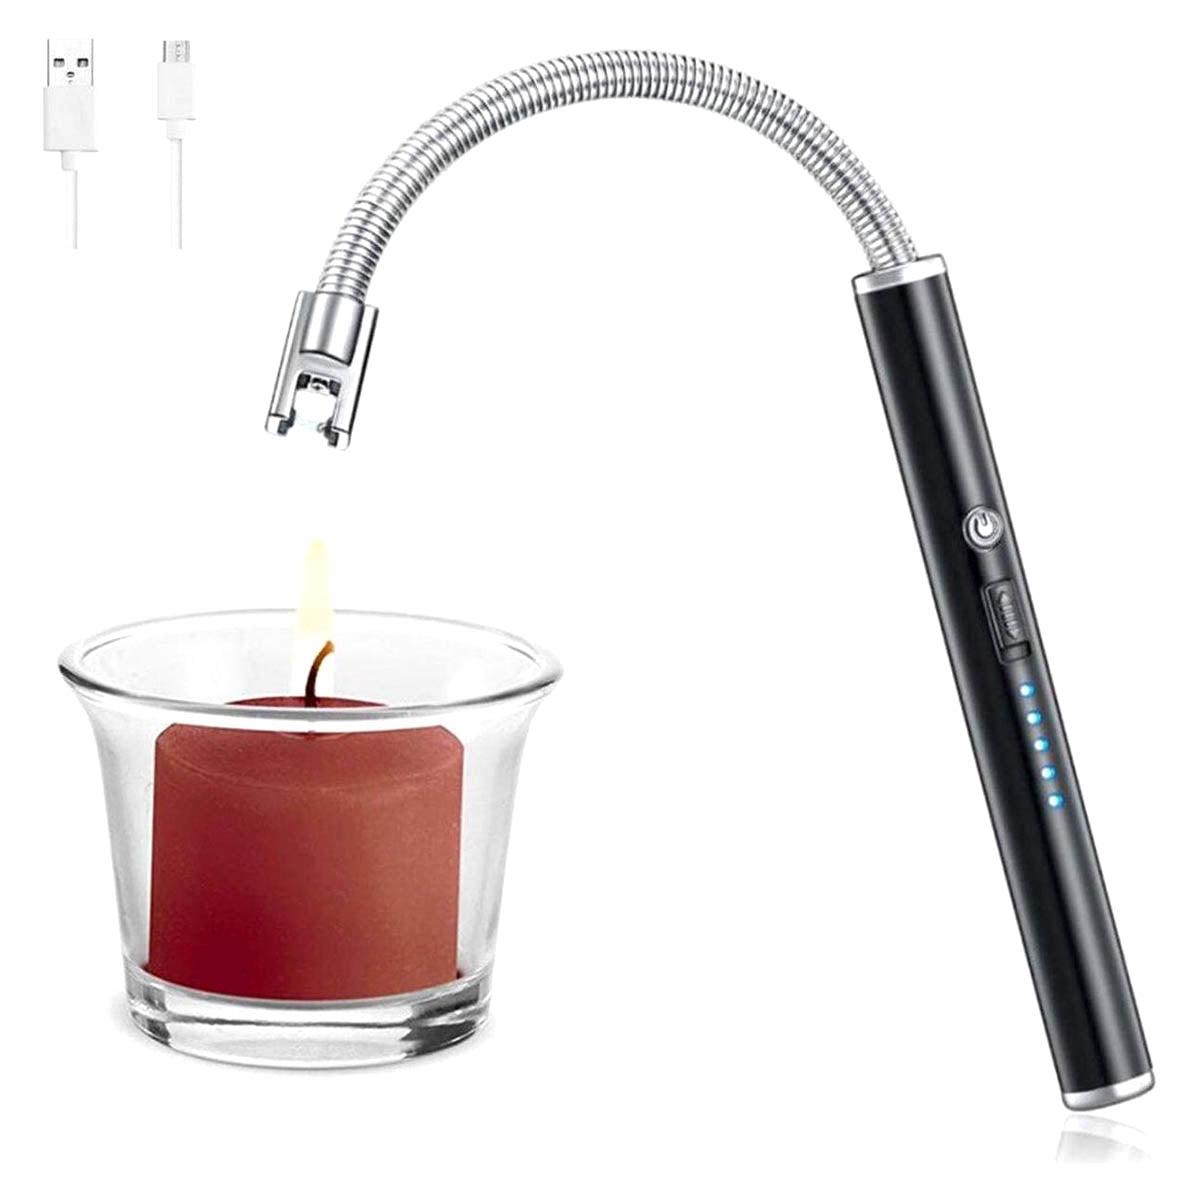 BBQ Aansteker oplaadbaar met usb kabel - Elektrische Keuken Aansteker - Flexibele Aansteker - Goud - Ariko